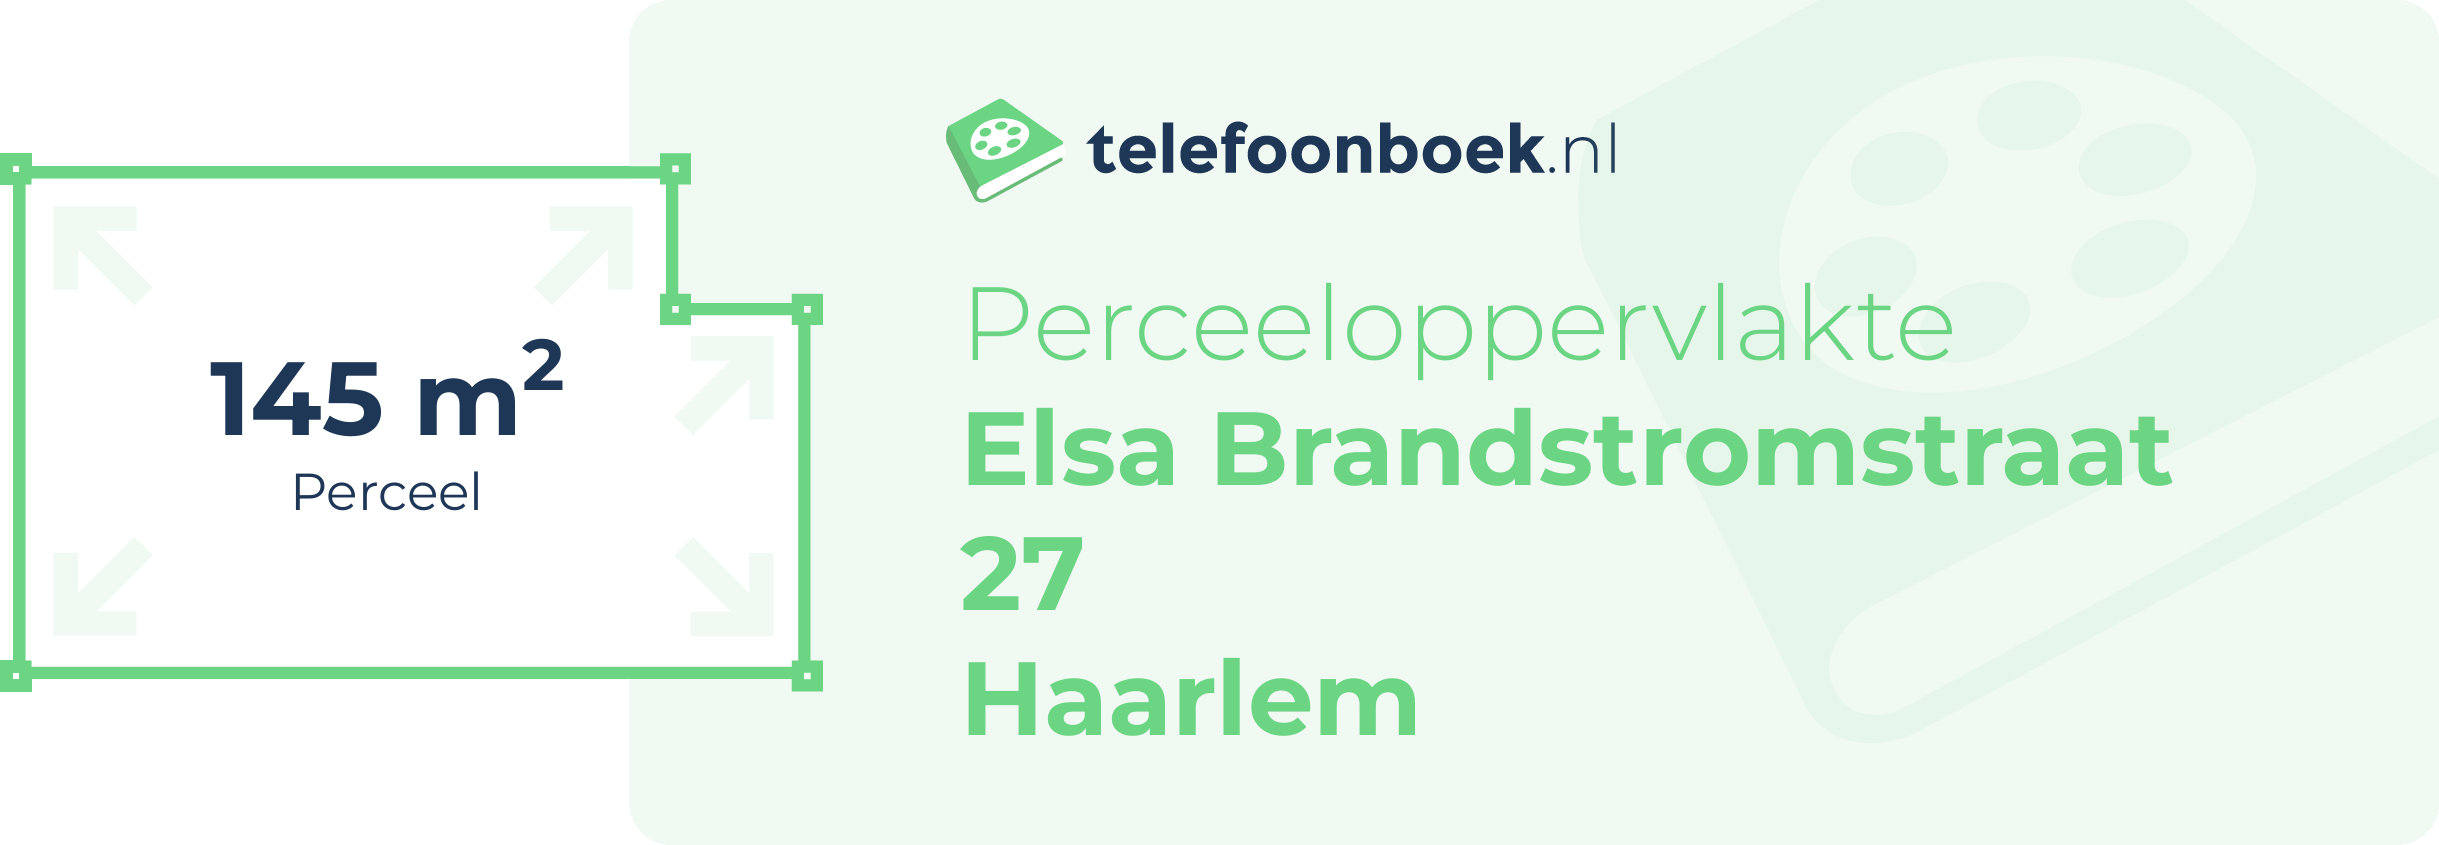 Perceeloppervlakte Elsa Brandstromstraat 27 Haarlem